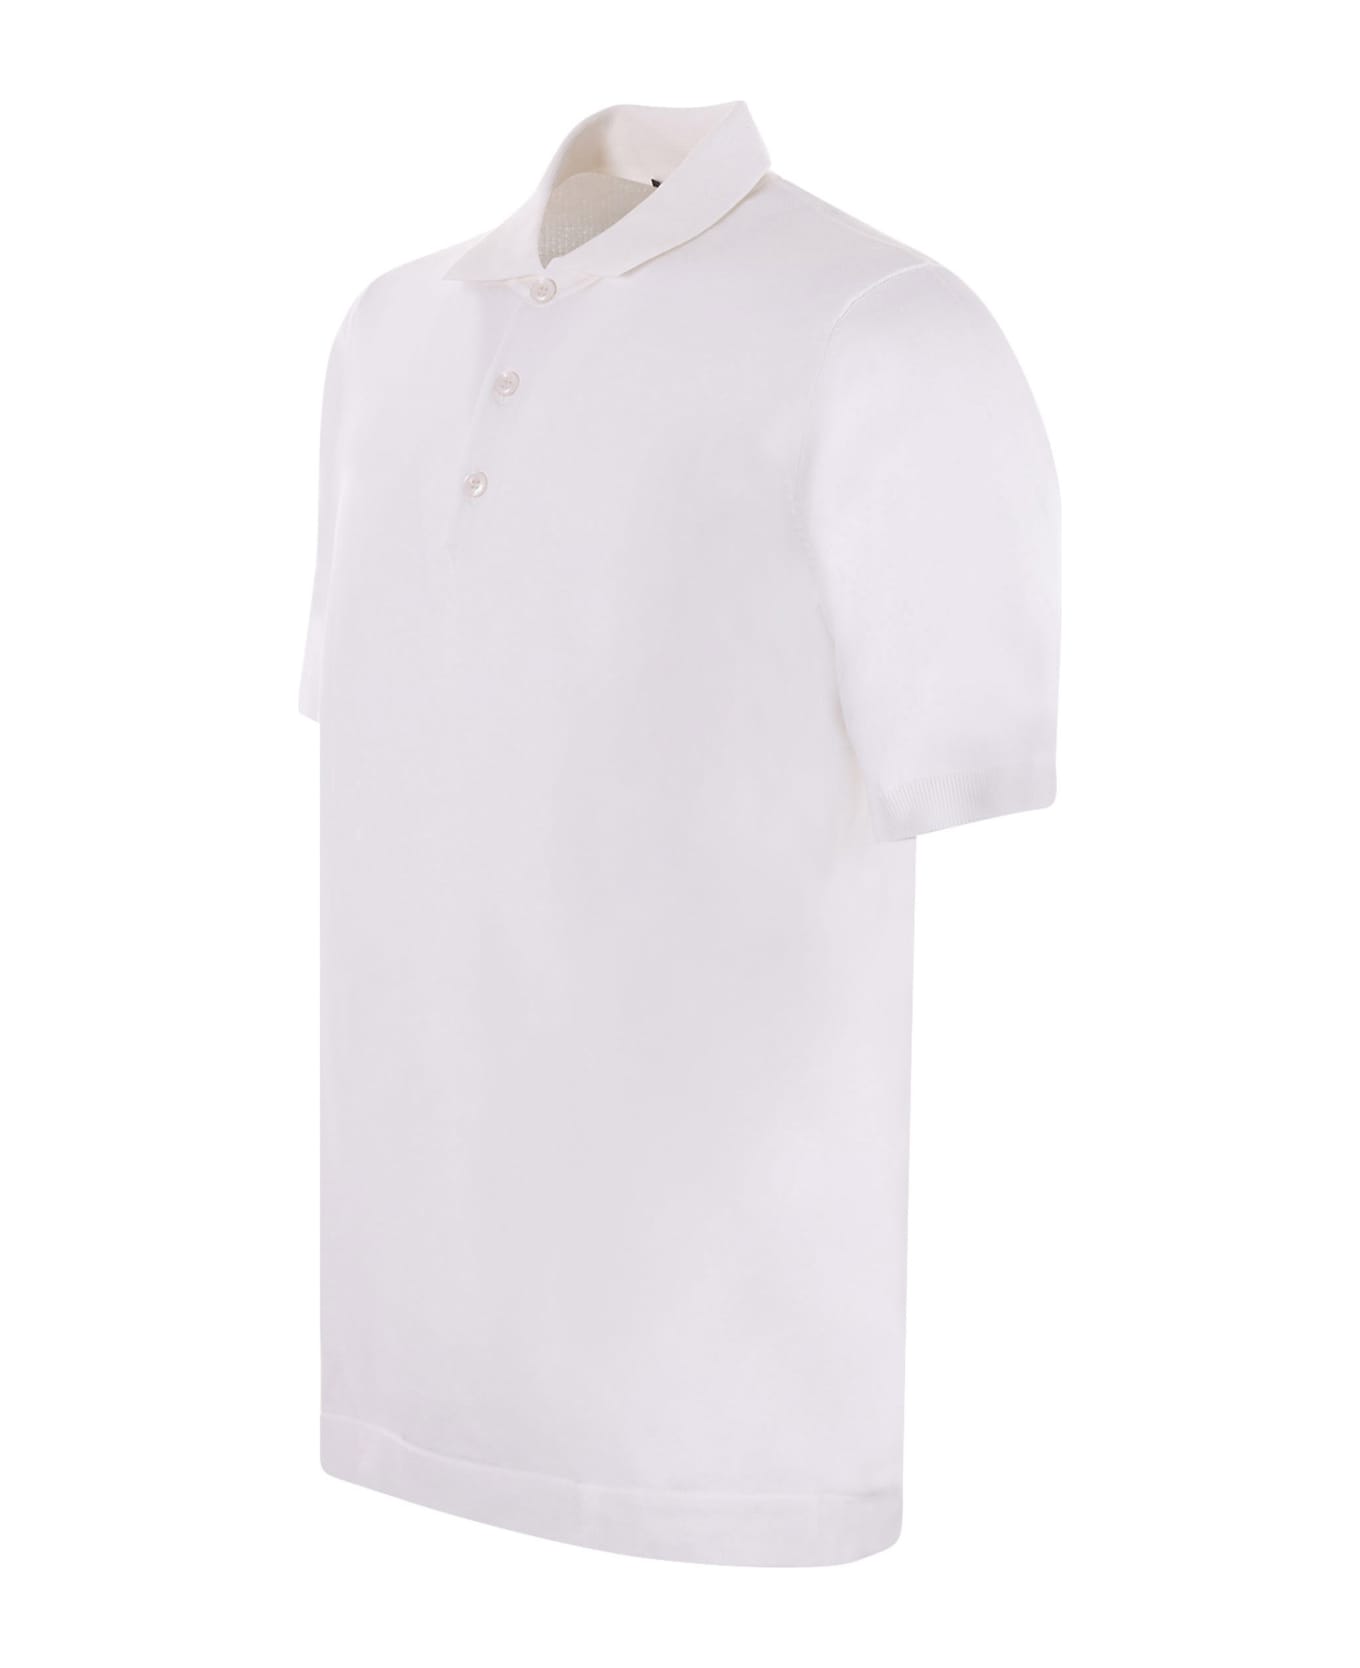 Jeordie's Polo Jeordie's In Filo Di Cotone Disponibile Store Scafati - Bianco ポロシャツ